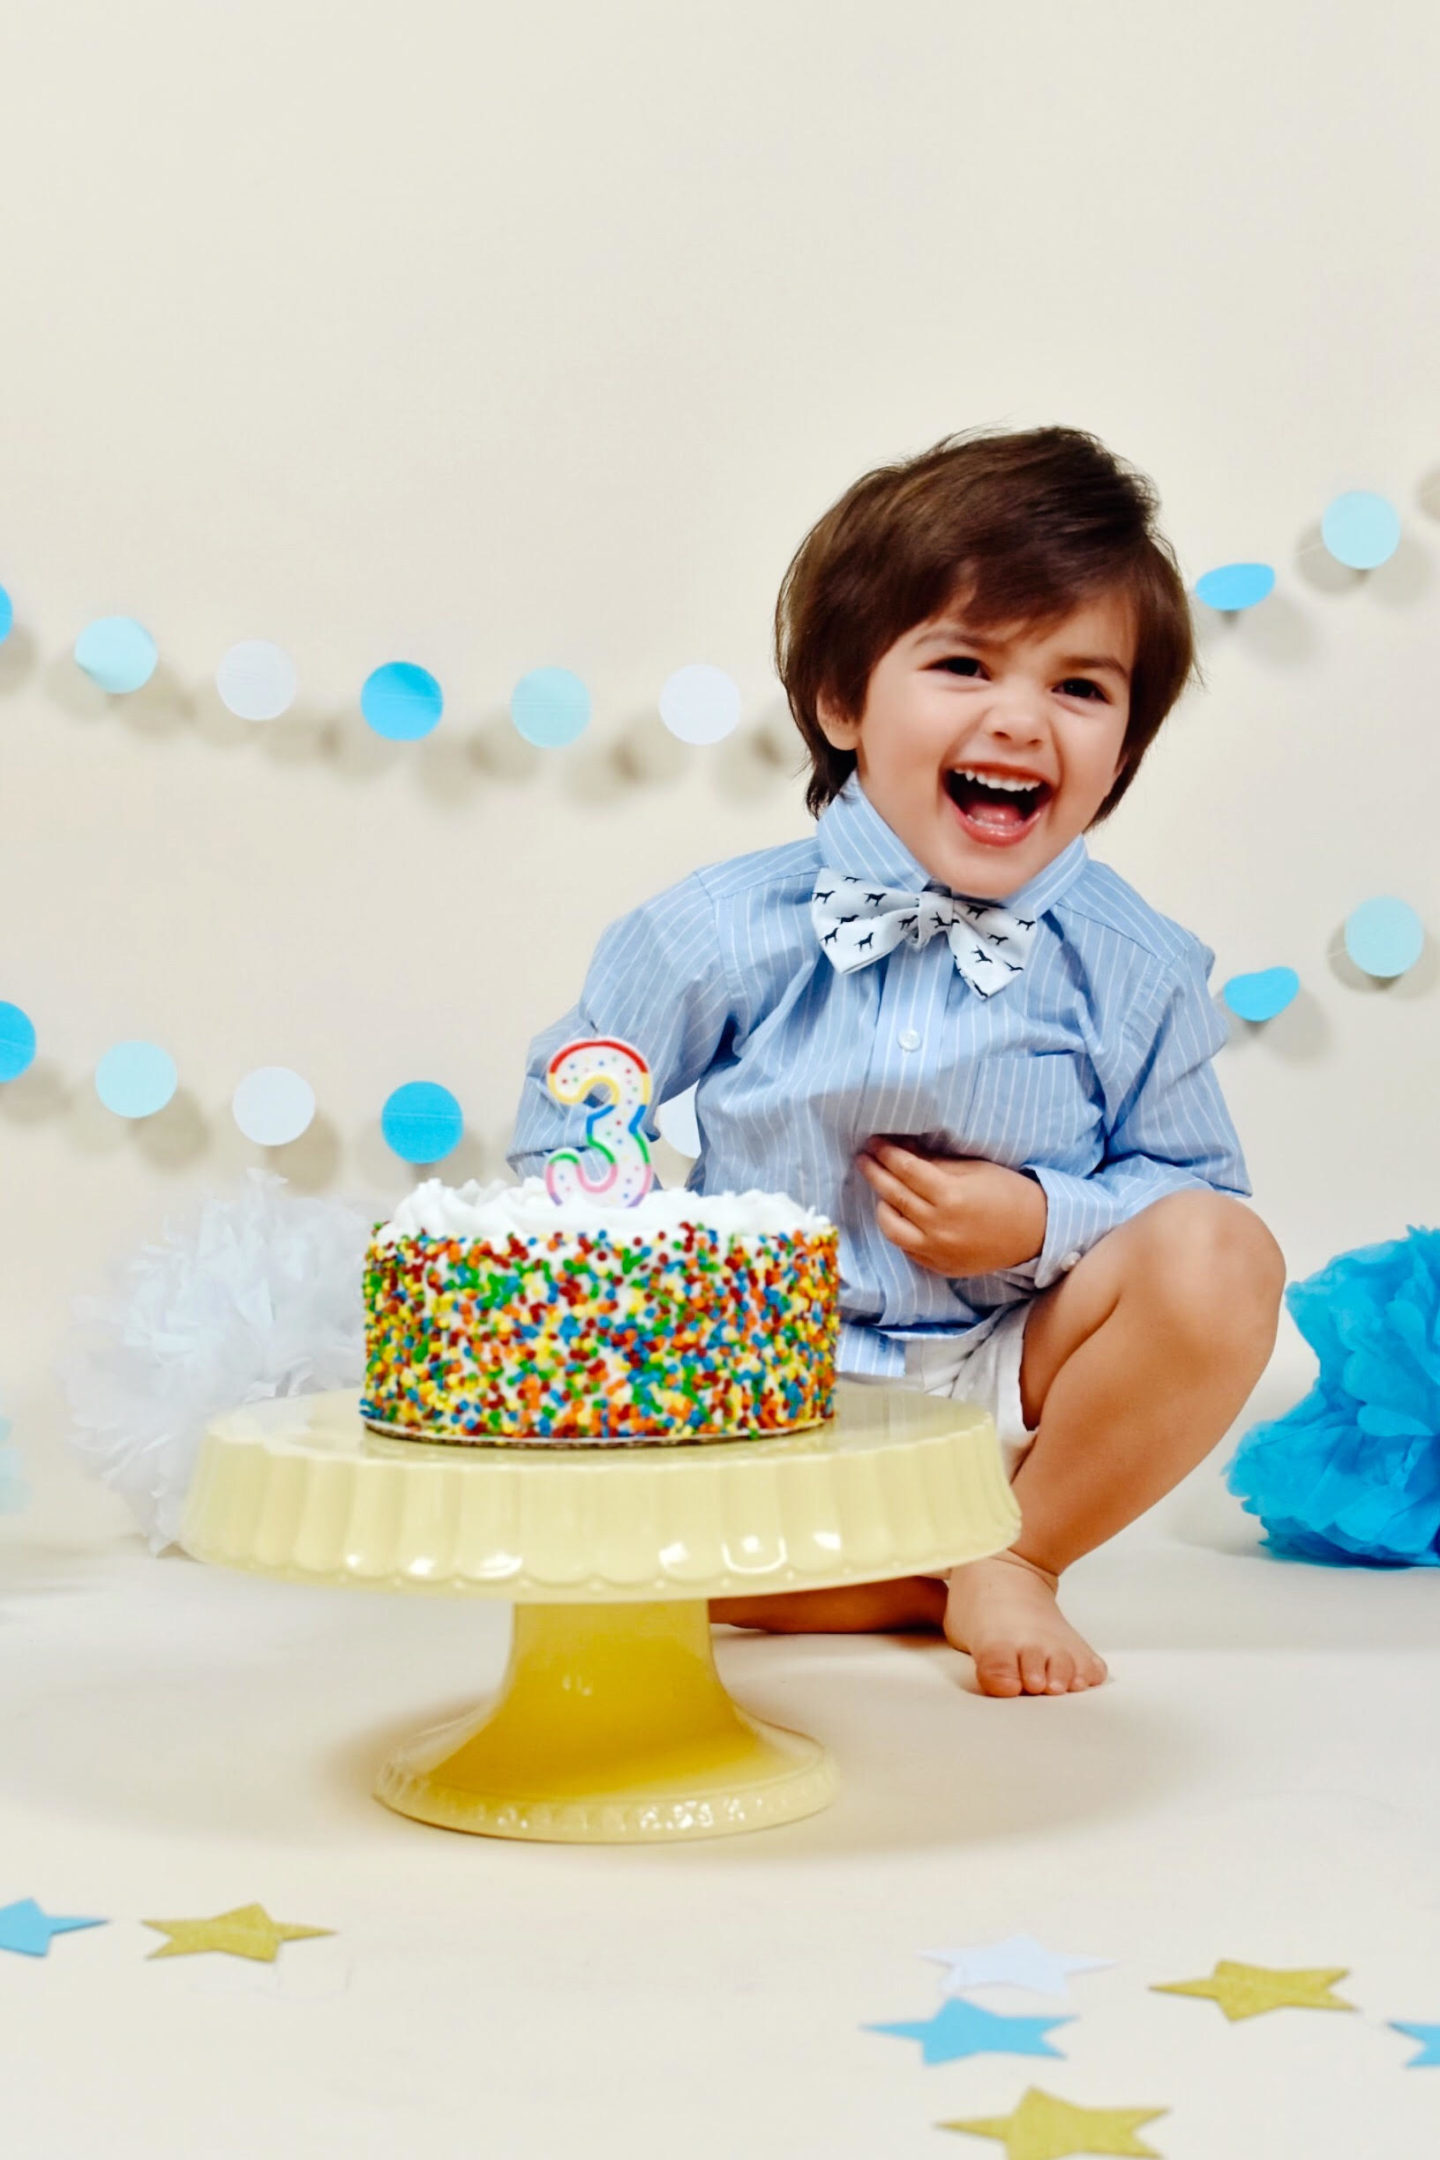 third-birthday-cake-jaxson-son-vanessa-lambert-whatwouldvwear